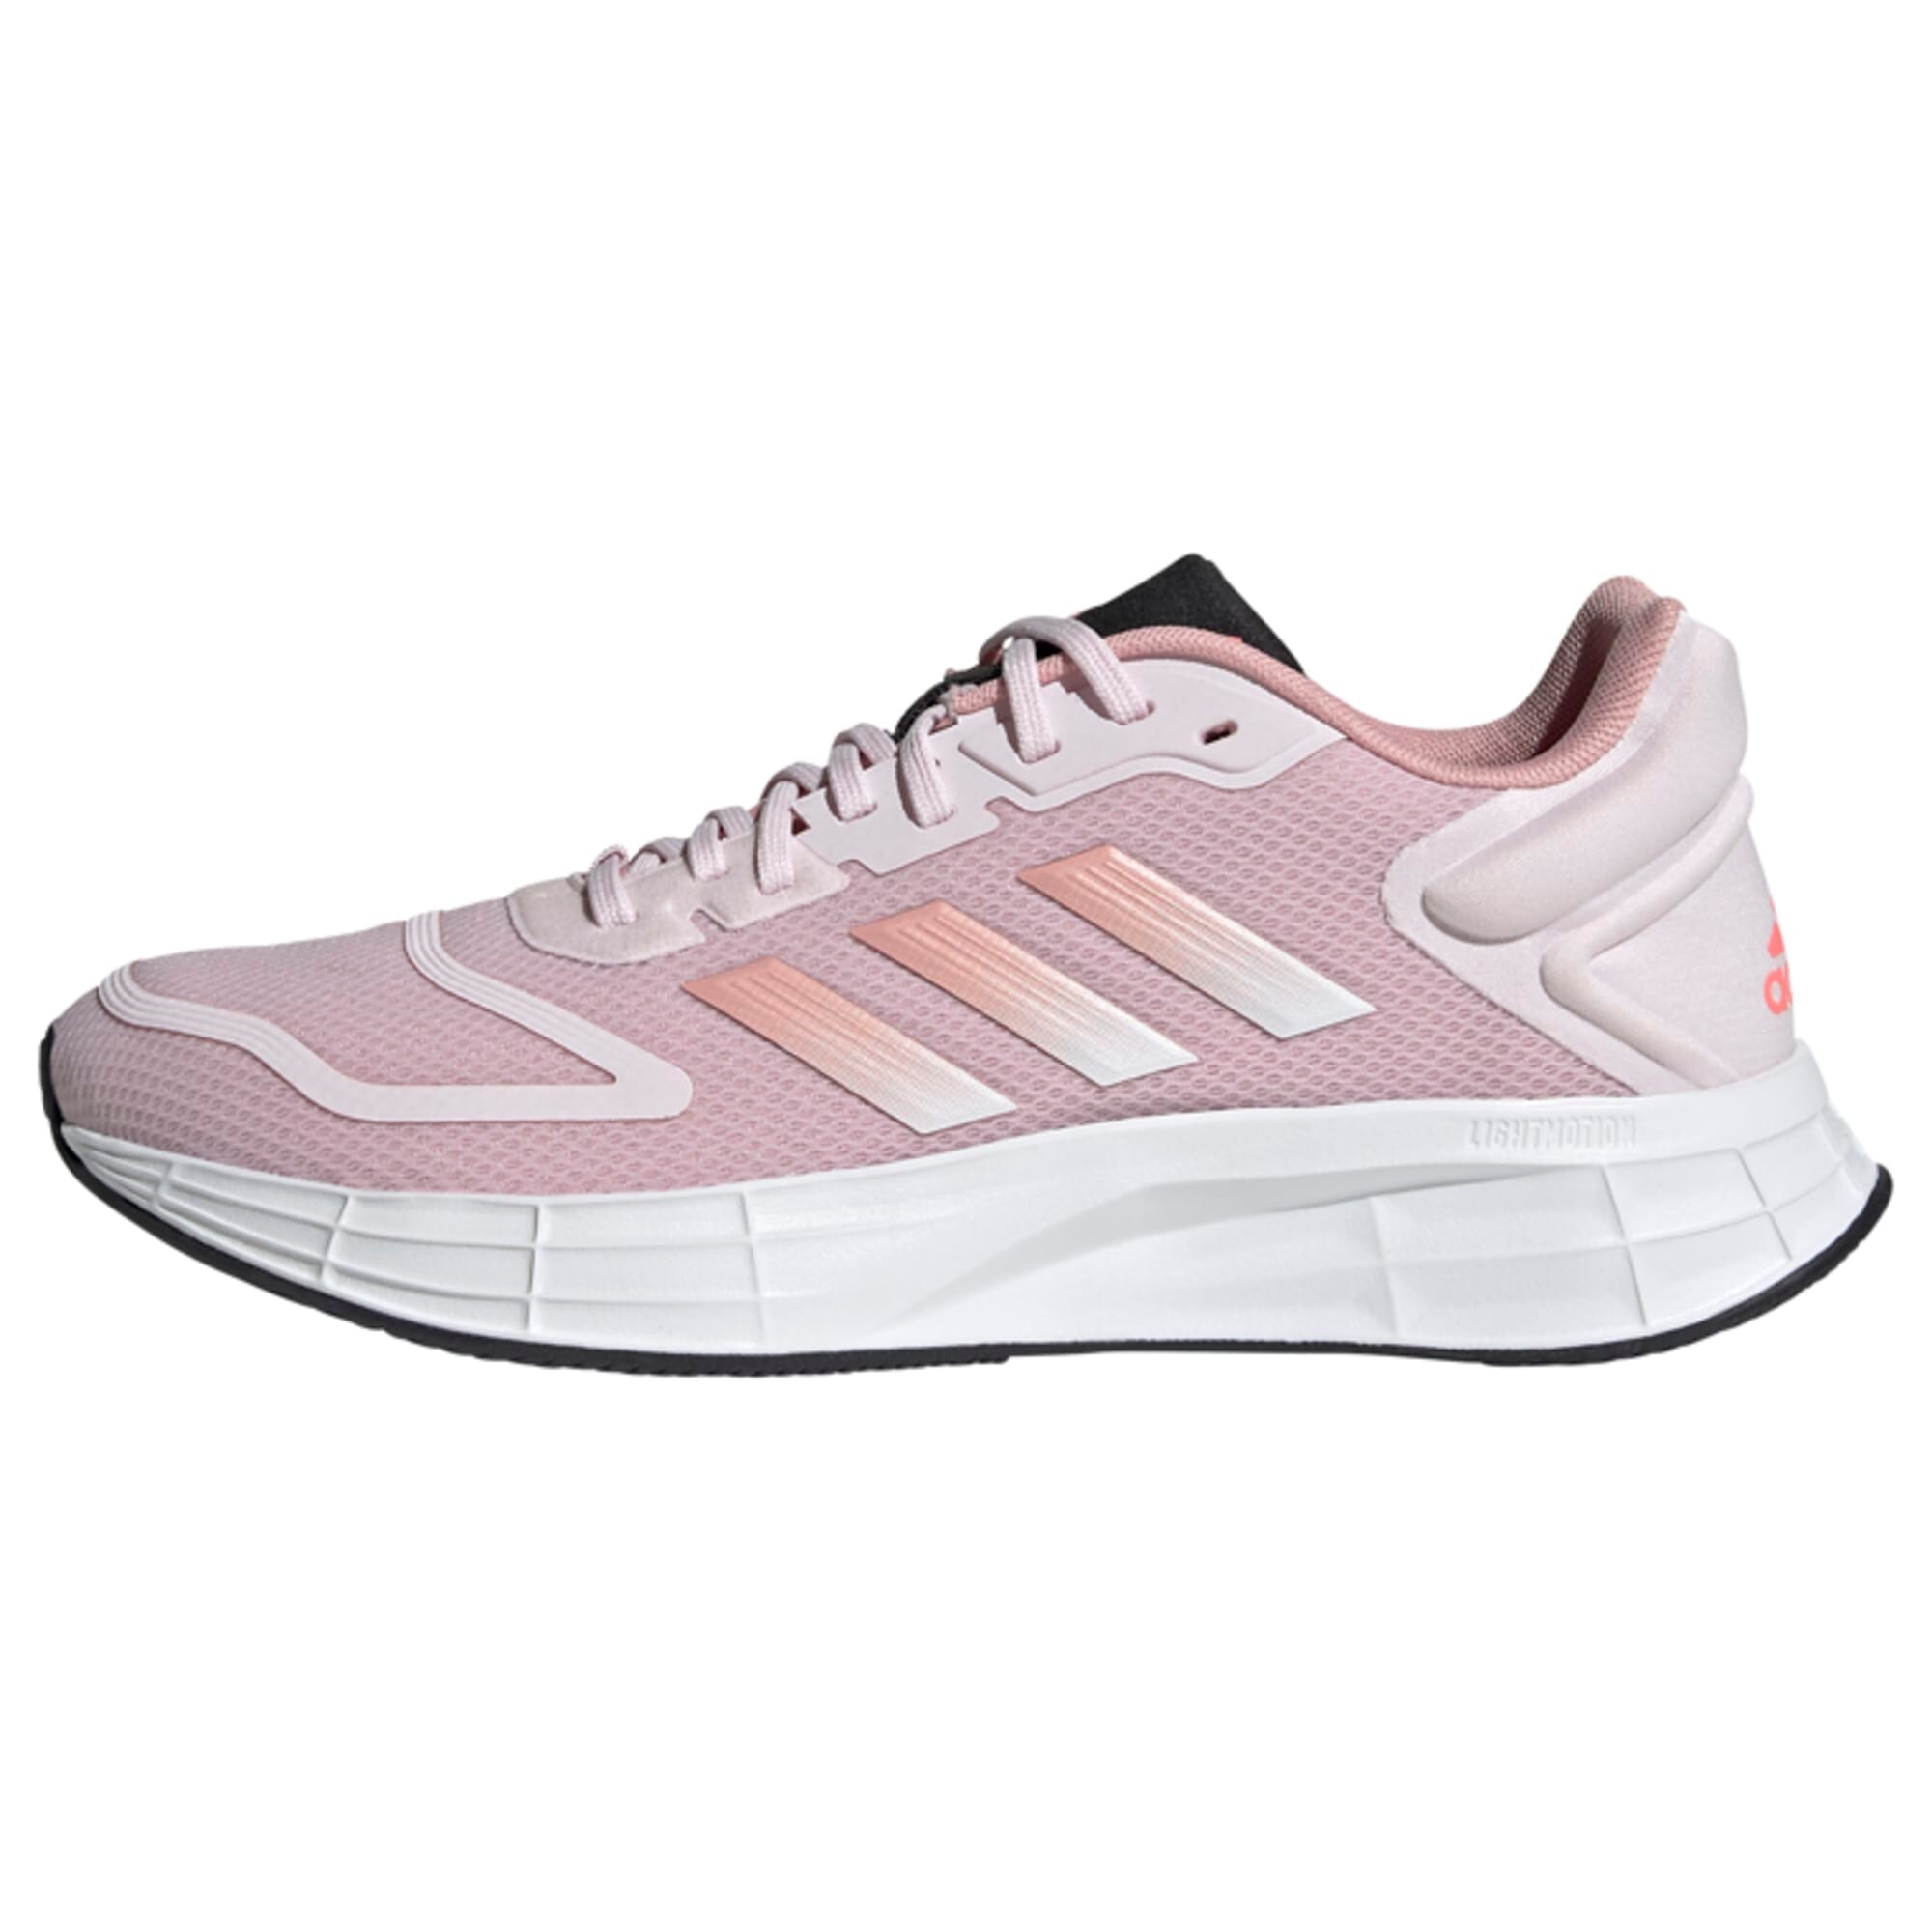 ADIDAS PERFORMANCE Bėgimo batai 'Duramo' rožių spalva / balta / oranžinė